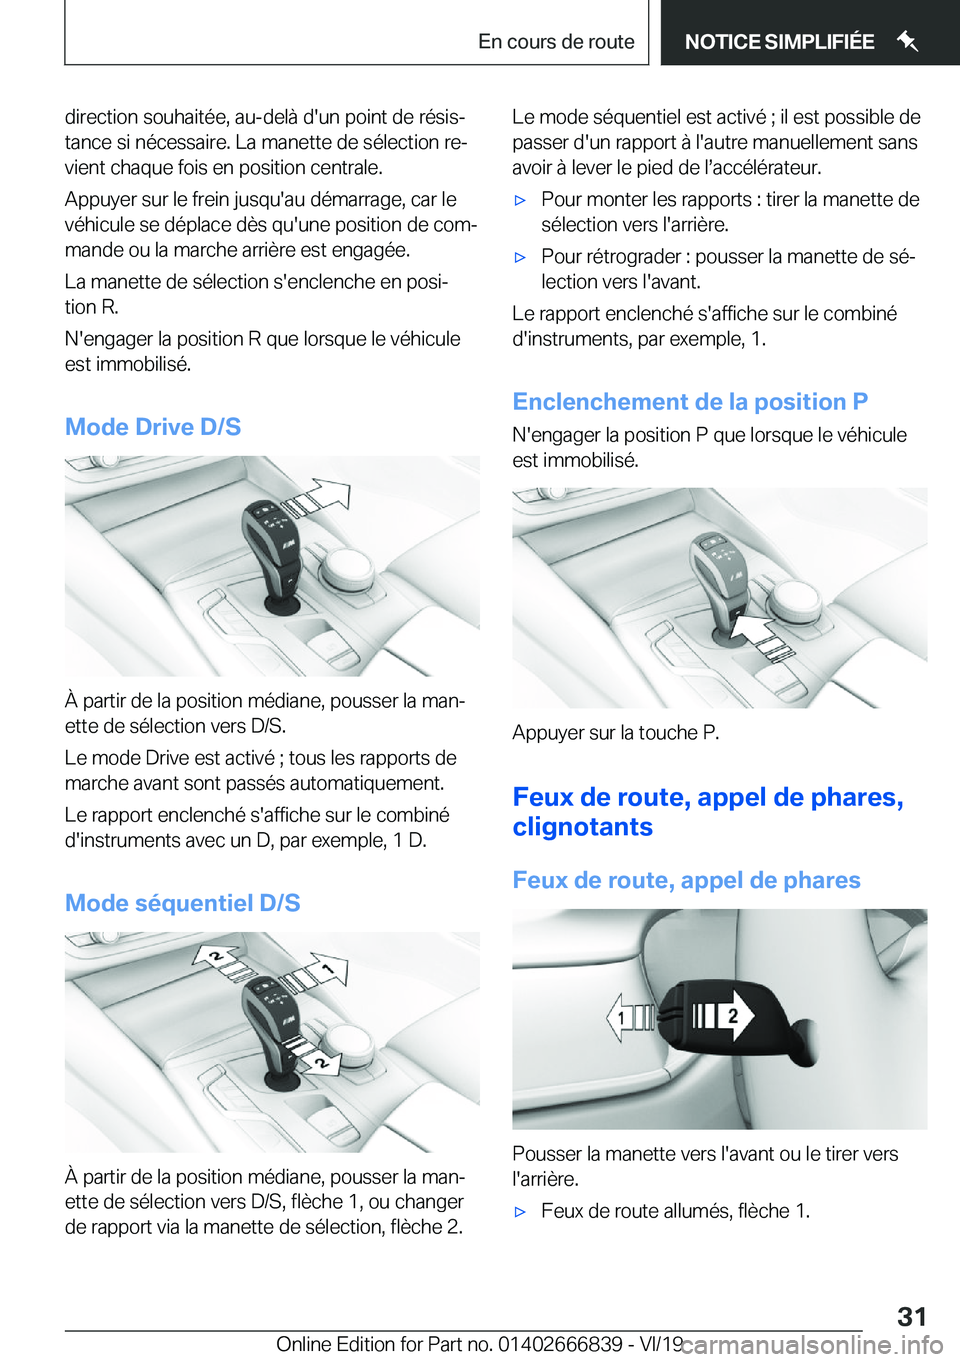 BMW X3 M 2020  Notices Demploi (in French) �d�i�r�e�c�t�i�o�n��s�o�u�h�a�i�t�é�e�,��a�u�-�d�e�l�